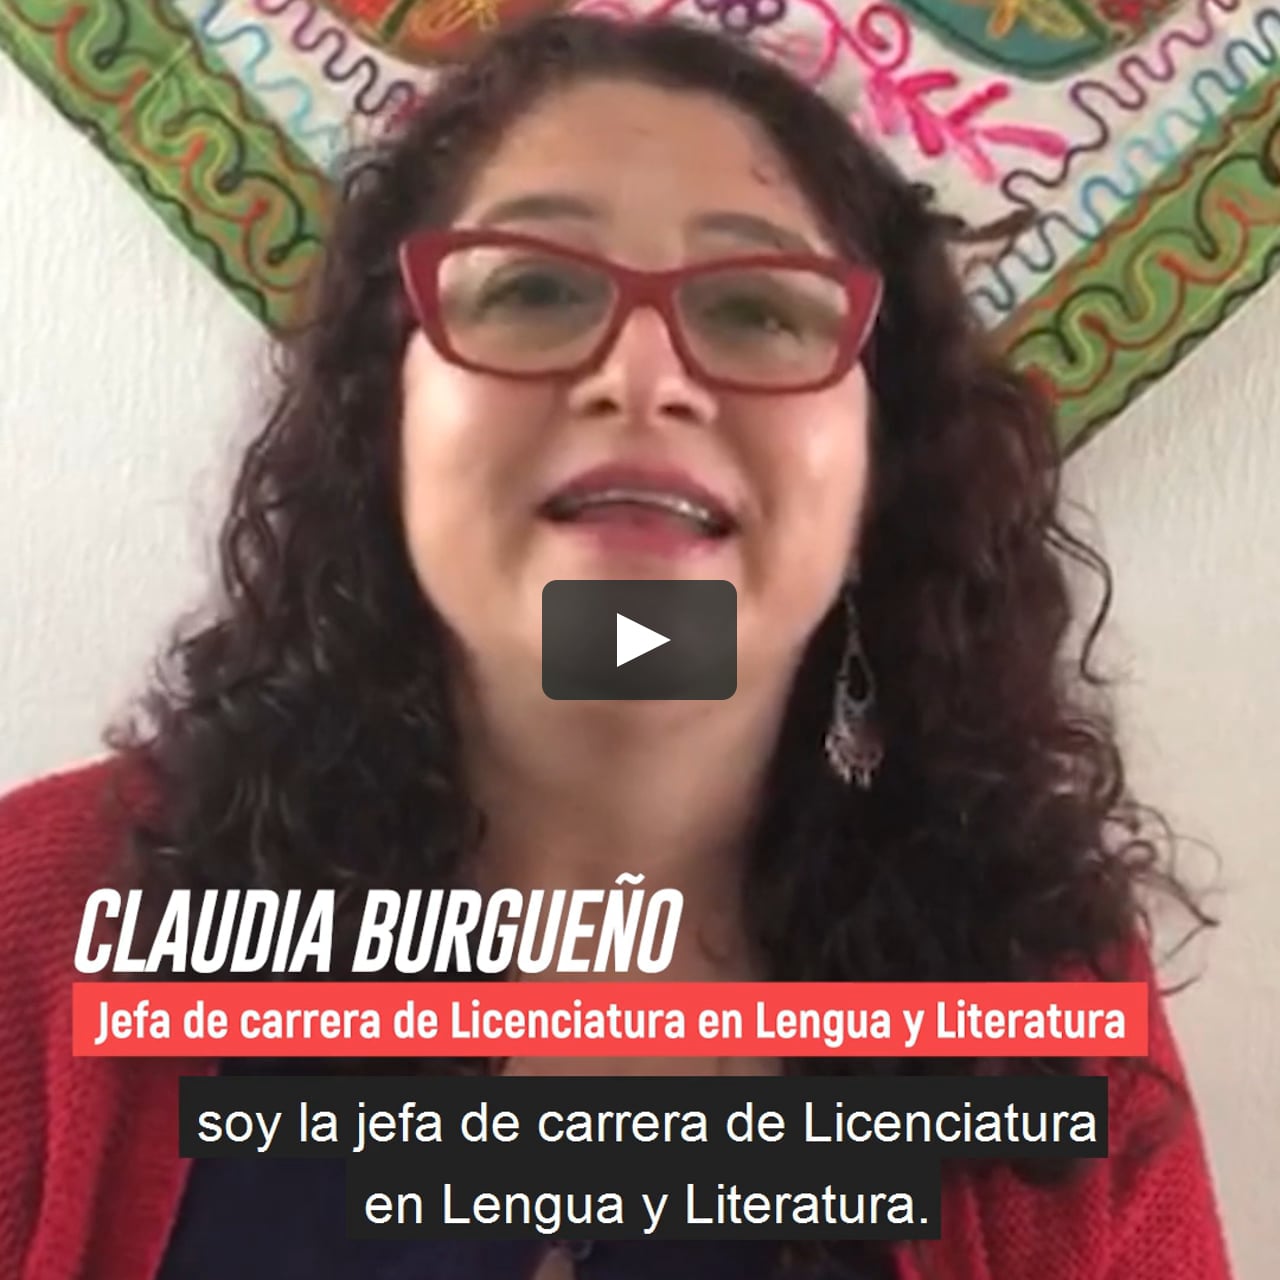 Licenciatura en Lengua y Literatura on Vimeo